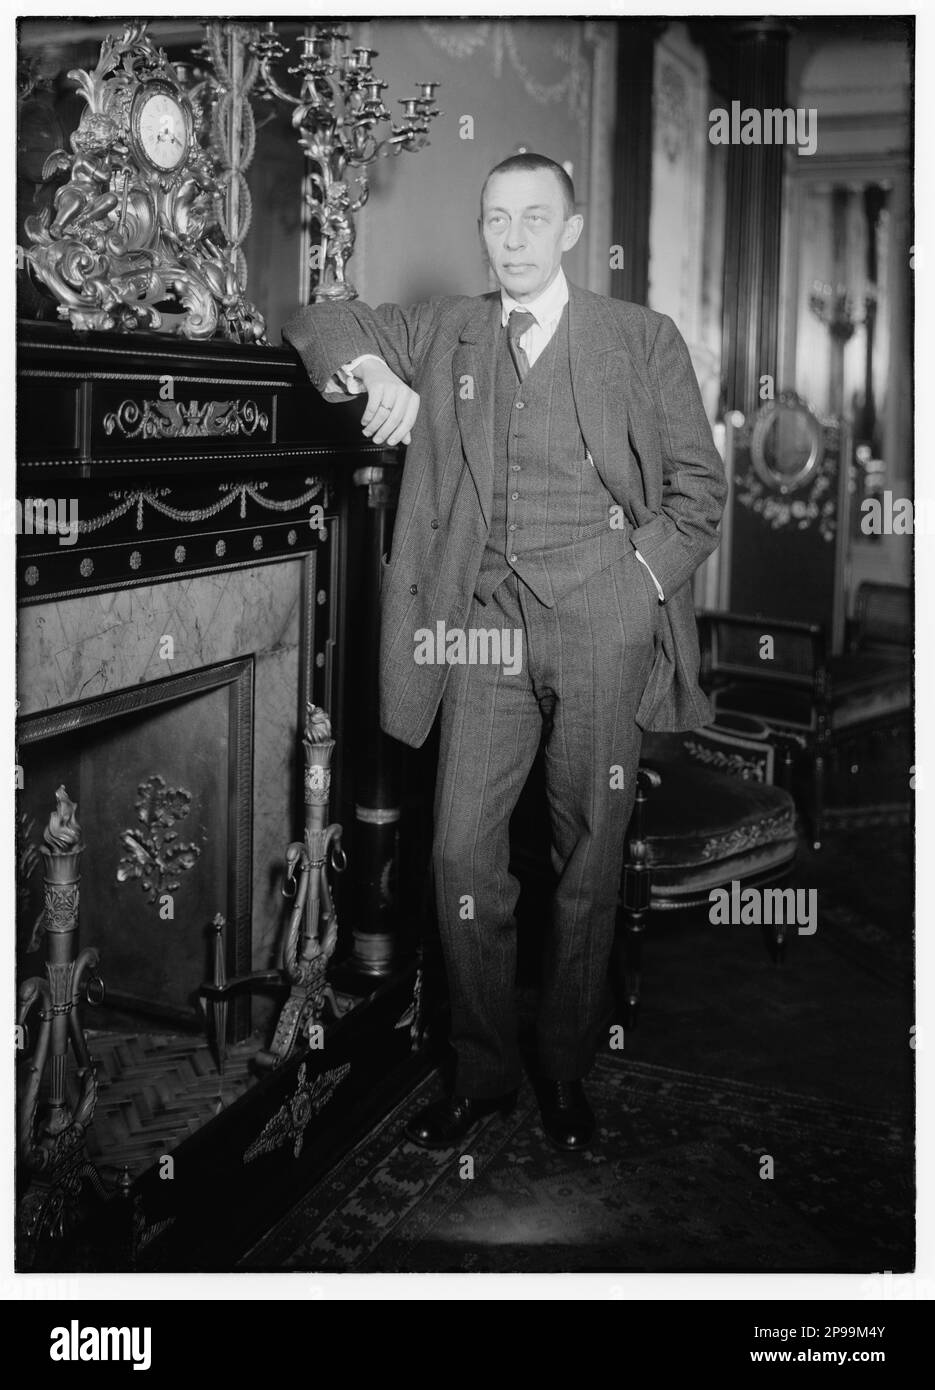 1921 , New York , USA : der russische Musikkomponist und Pianist SERGEI RACHMANINOFF ( Sergej Vasil'evic Rahmaninov - Sergej Wassiljewitsch Rachmaninov ) (Velikij Novgorod, Russland 1873 – Beverly Hills, USA 1943 ) . Er hatte großen Erfolg mit der Oper ALEKO , vier Klavierkonzerten und vielen anderen Werken . Er war einer der größten Pianisten seiner Zeit. Foto von Bain , New York - PIANISTA - COMPOSITORE - OPERA LIRICA - CLASSICA - KLASSISCH - PORTRAIT - RITRATTO - MUSICISTA - MUSICA - caminetto - CRAVATTA - TIE - - - ARCHIVIO GBB Stockfoto